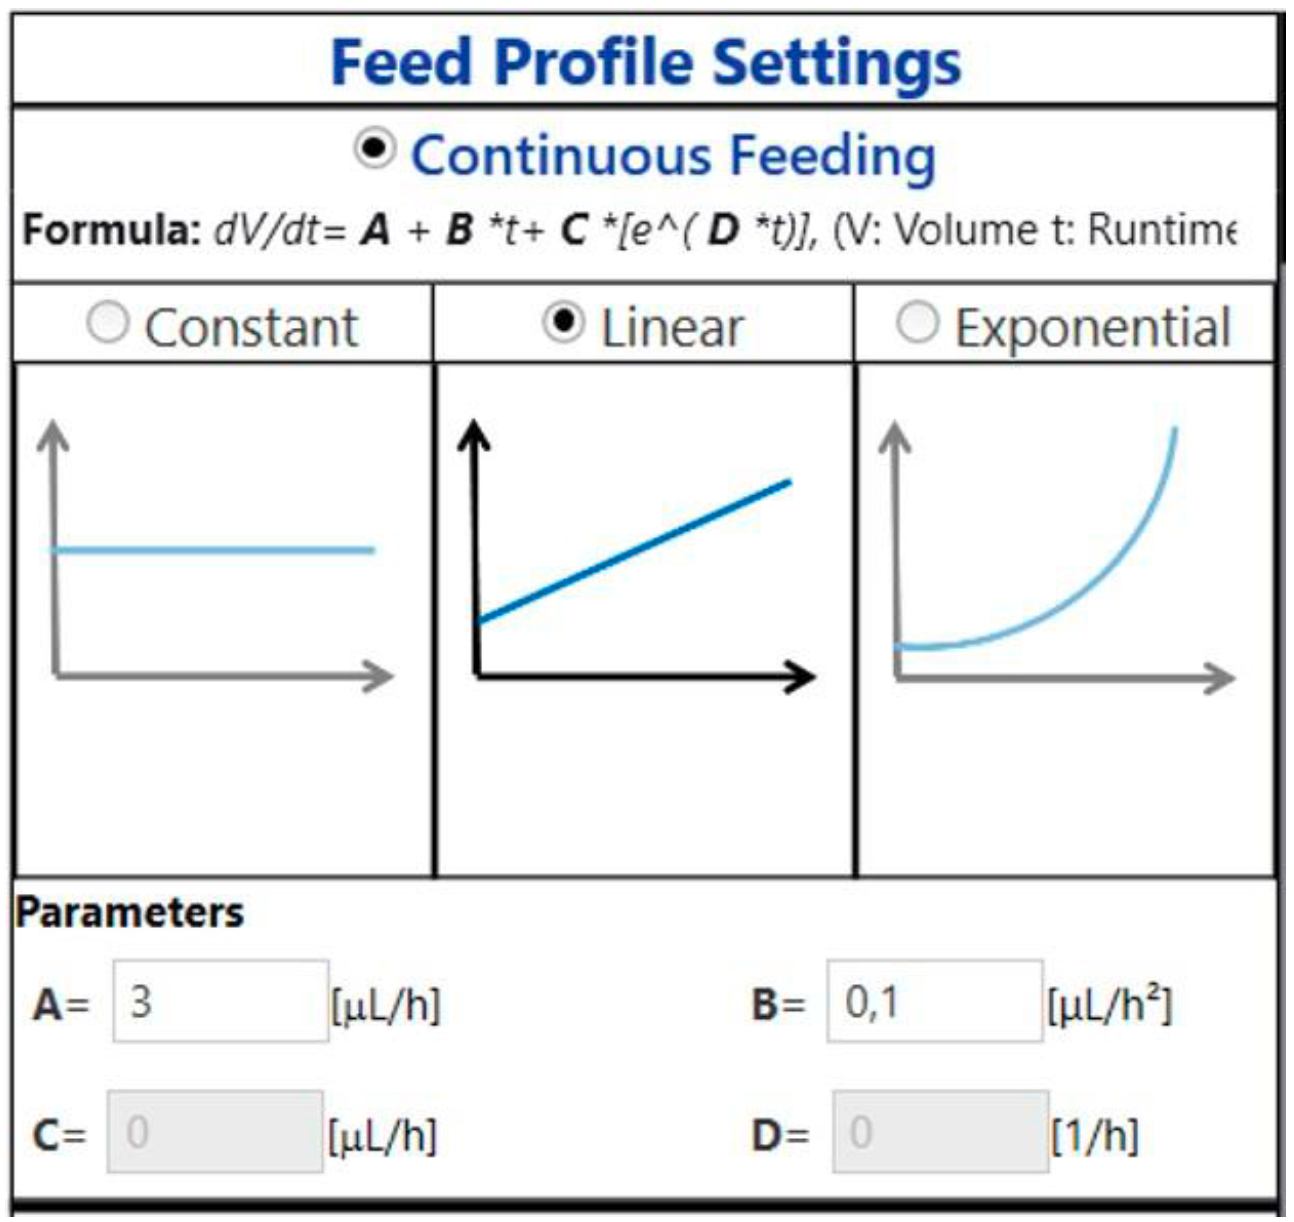 Figure 15: Linear feed profile settings